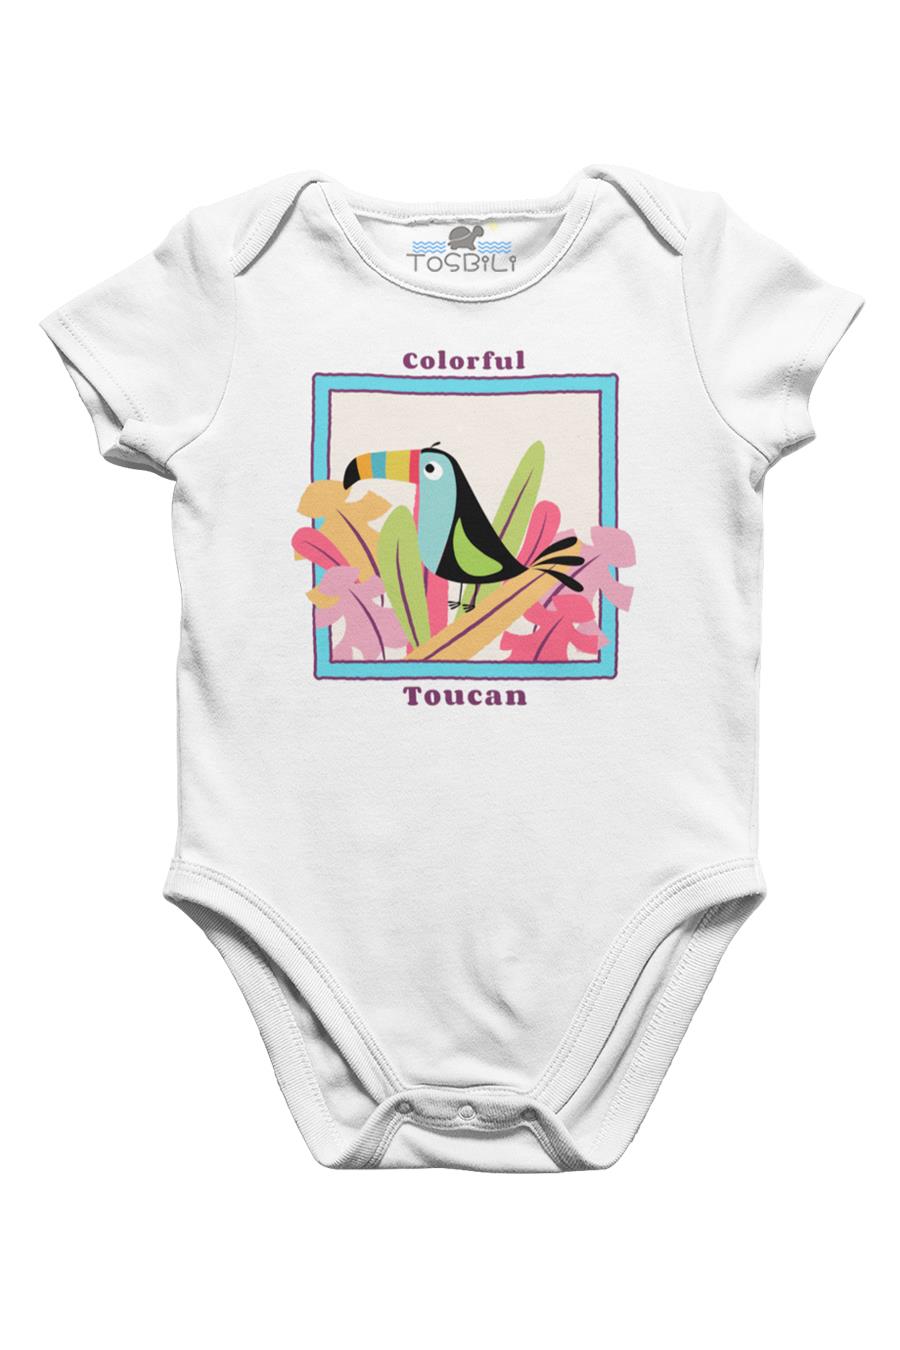 Tosbili Colorful Toucan Beyaz Bebek Body